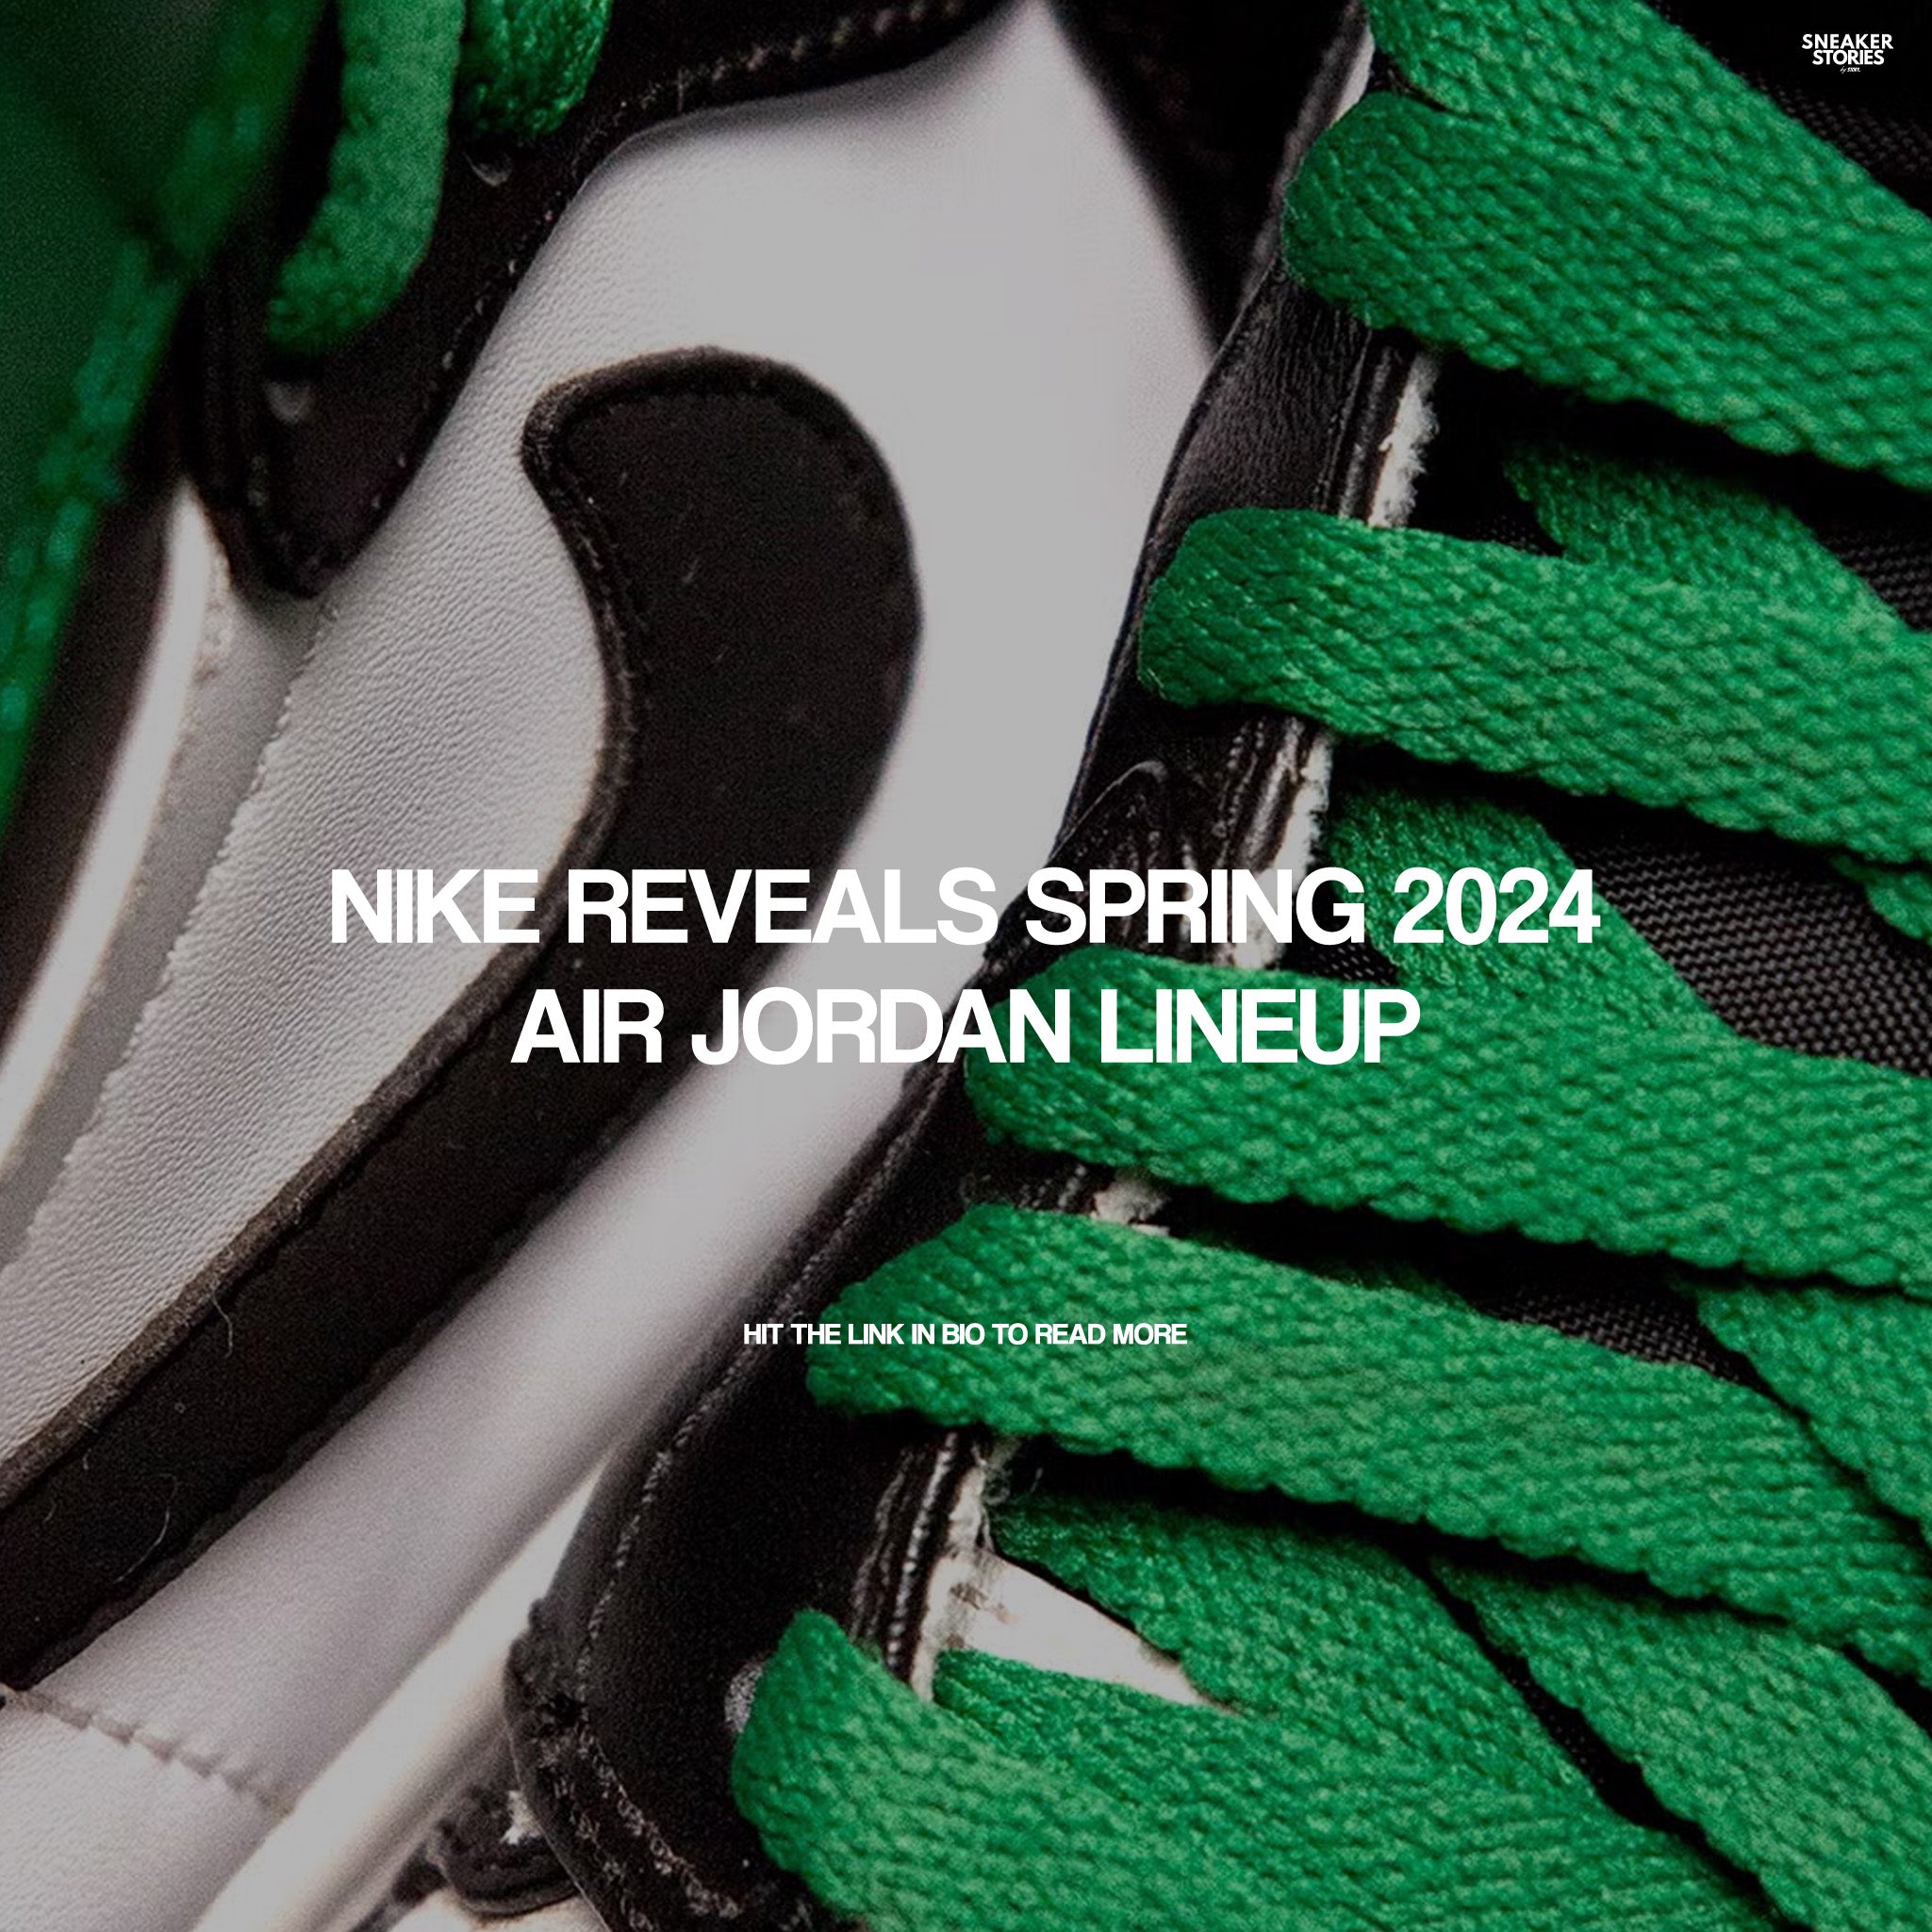 Nike reveals Spring 2024 Air Jordan lineup